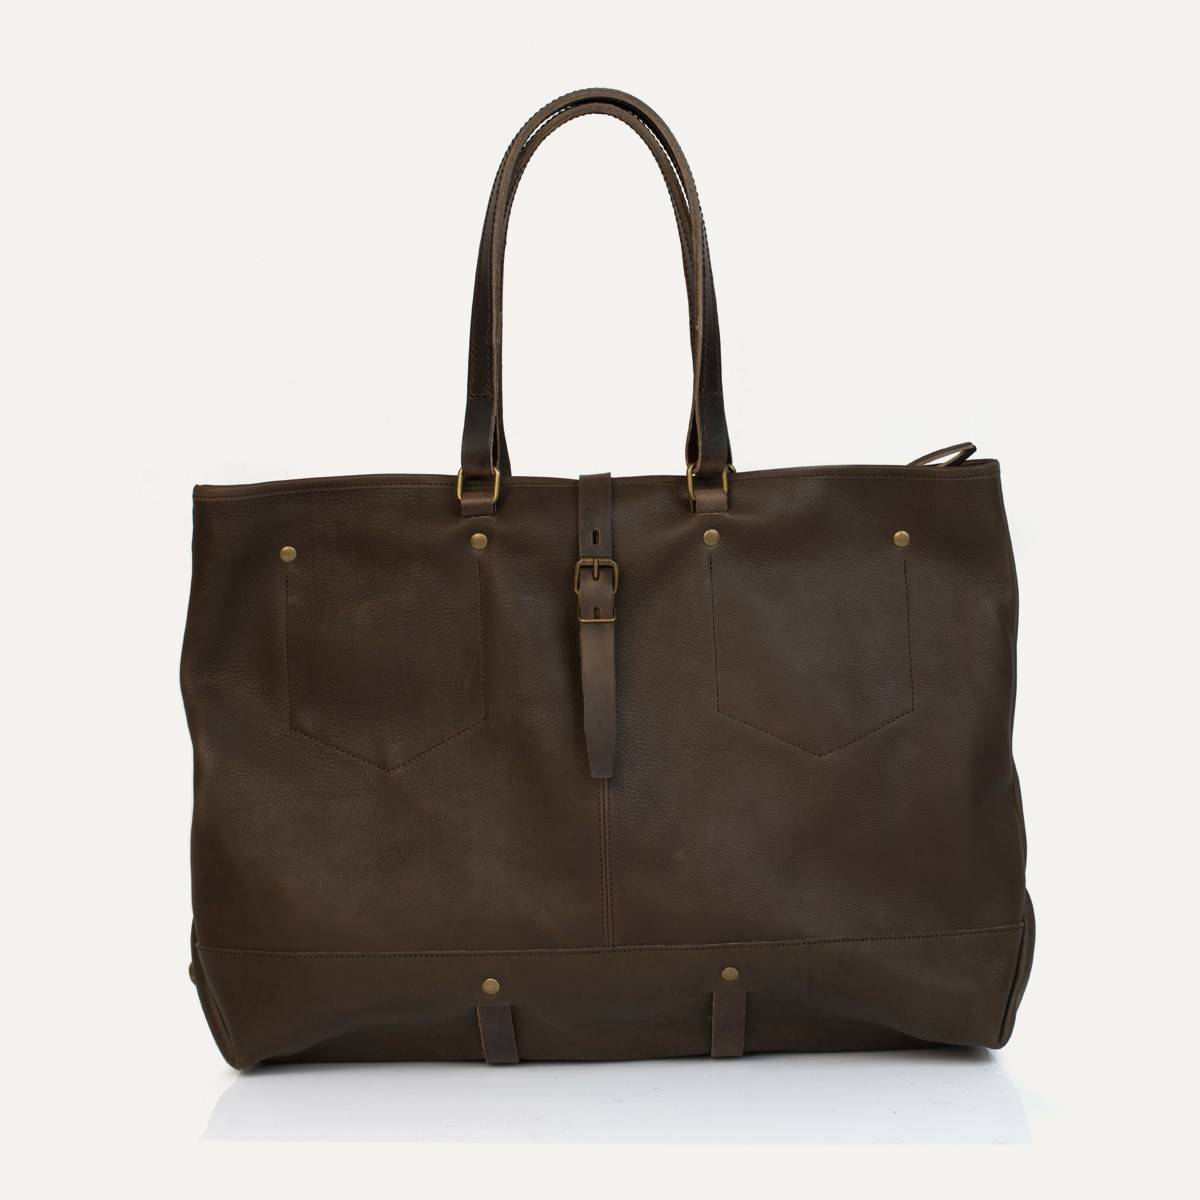 Garance shopping bag - Kenya (image n°1)